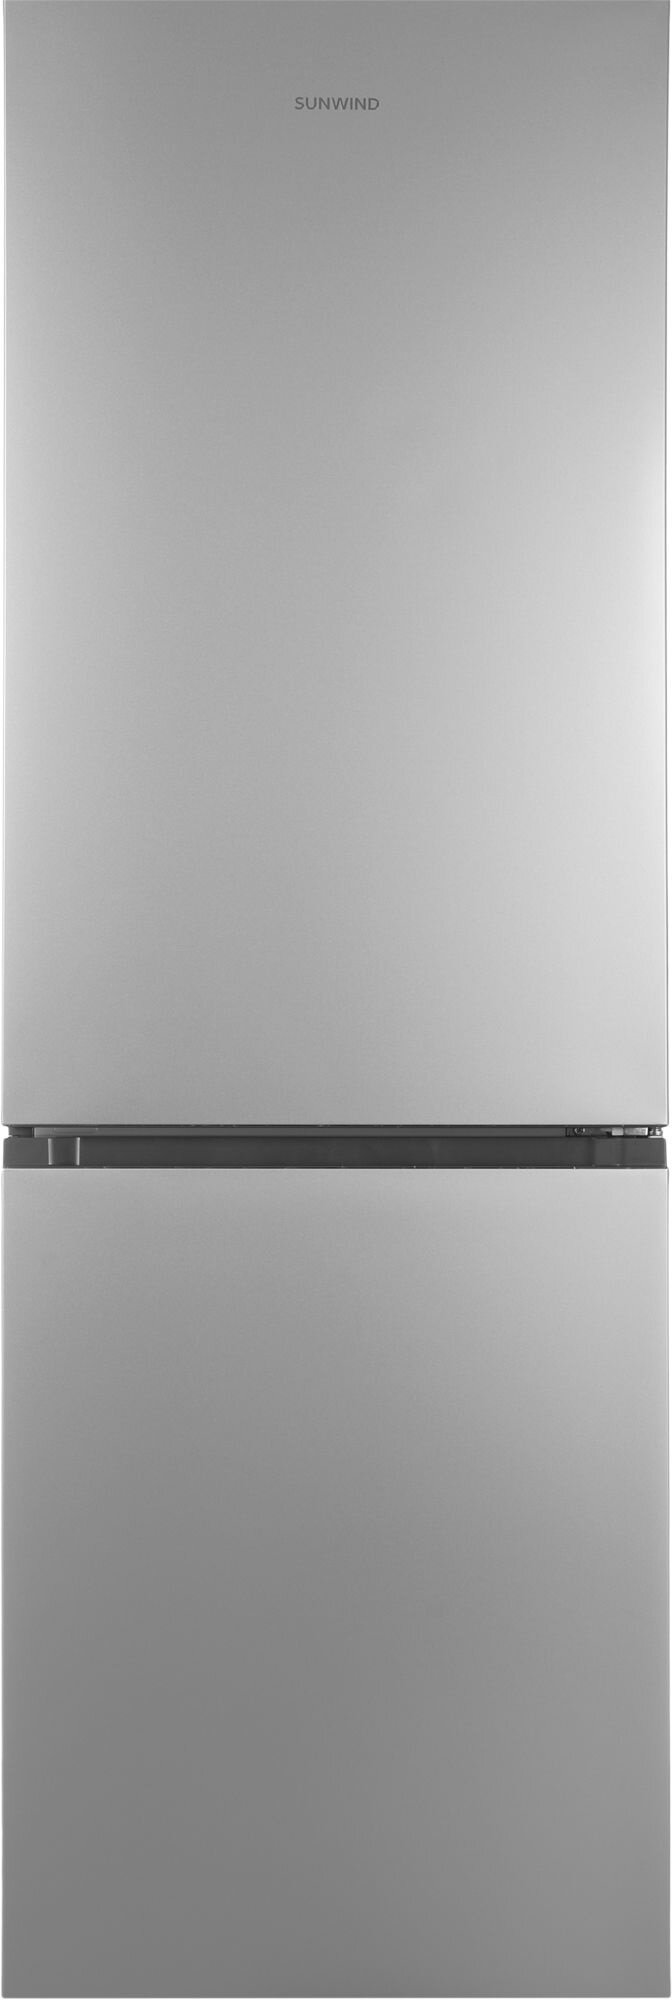 Холодильник SunWind SCC373 серебристый